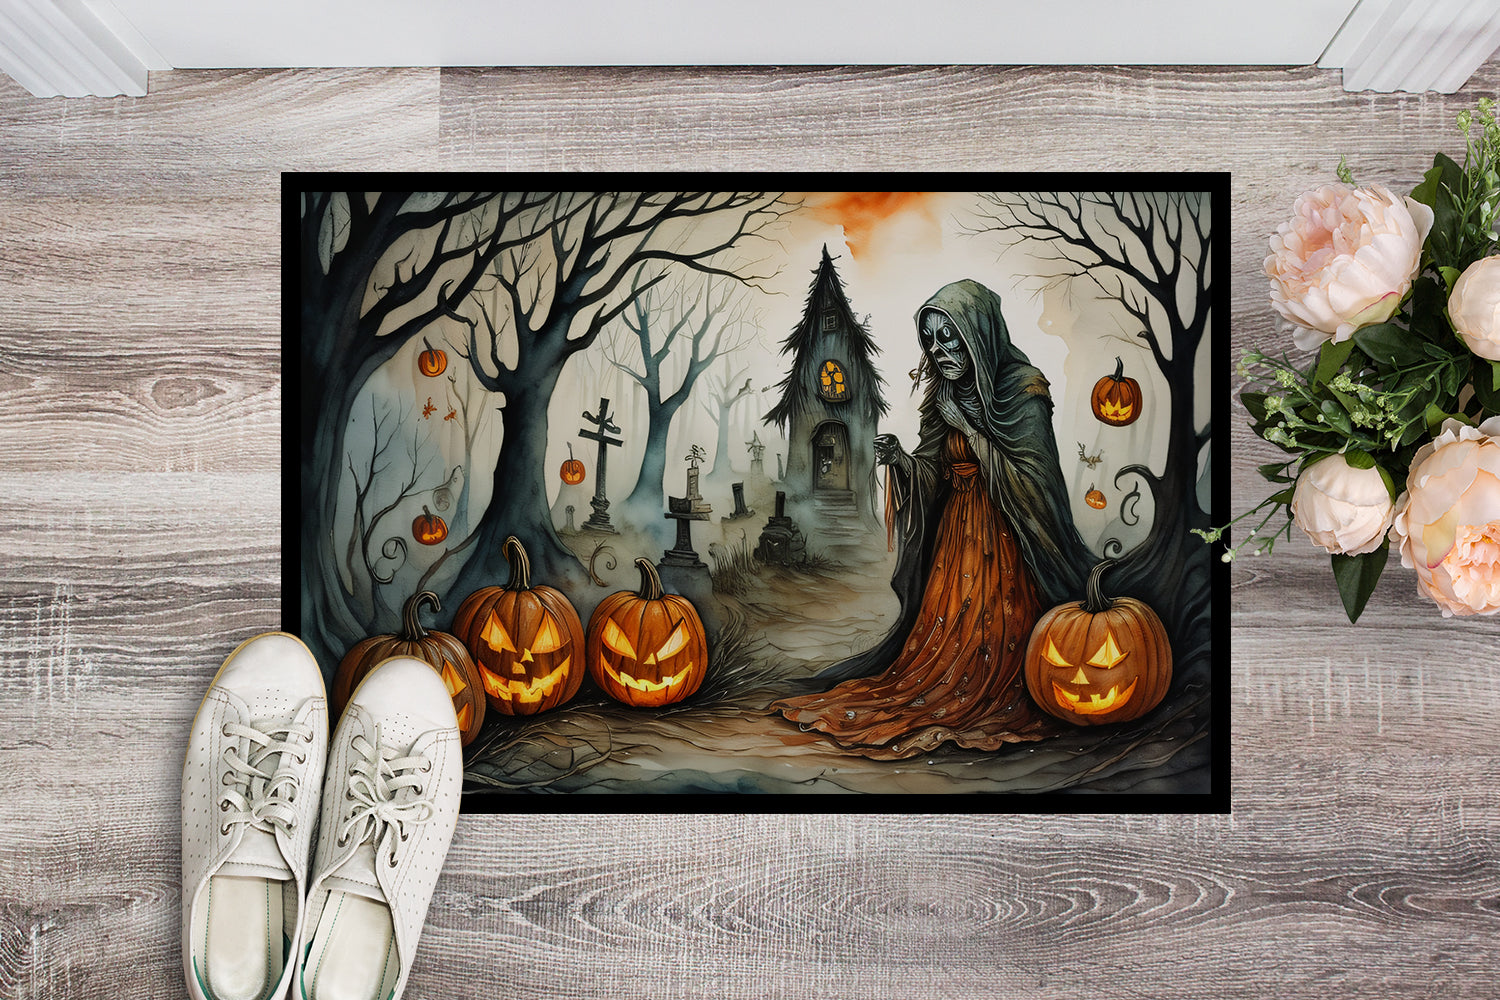 Buy this The Weeping Woman Spooky Halloween Doormat 18x27